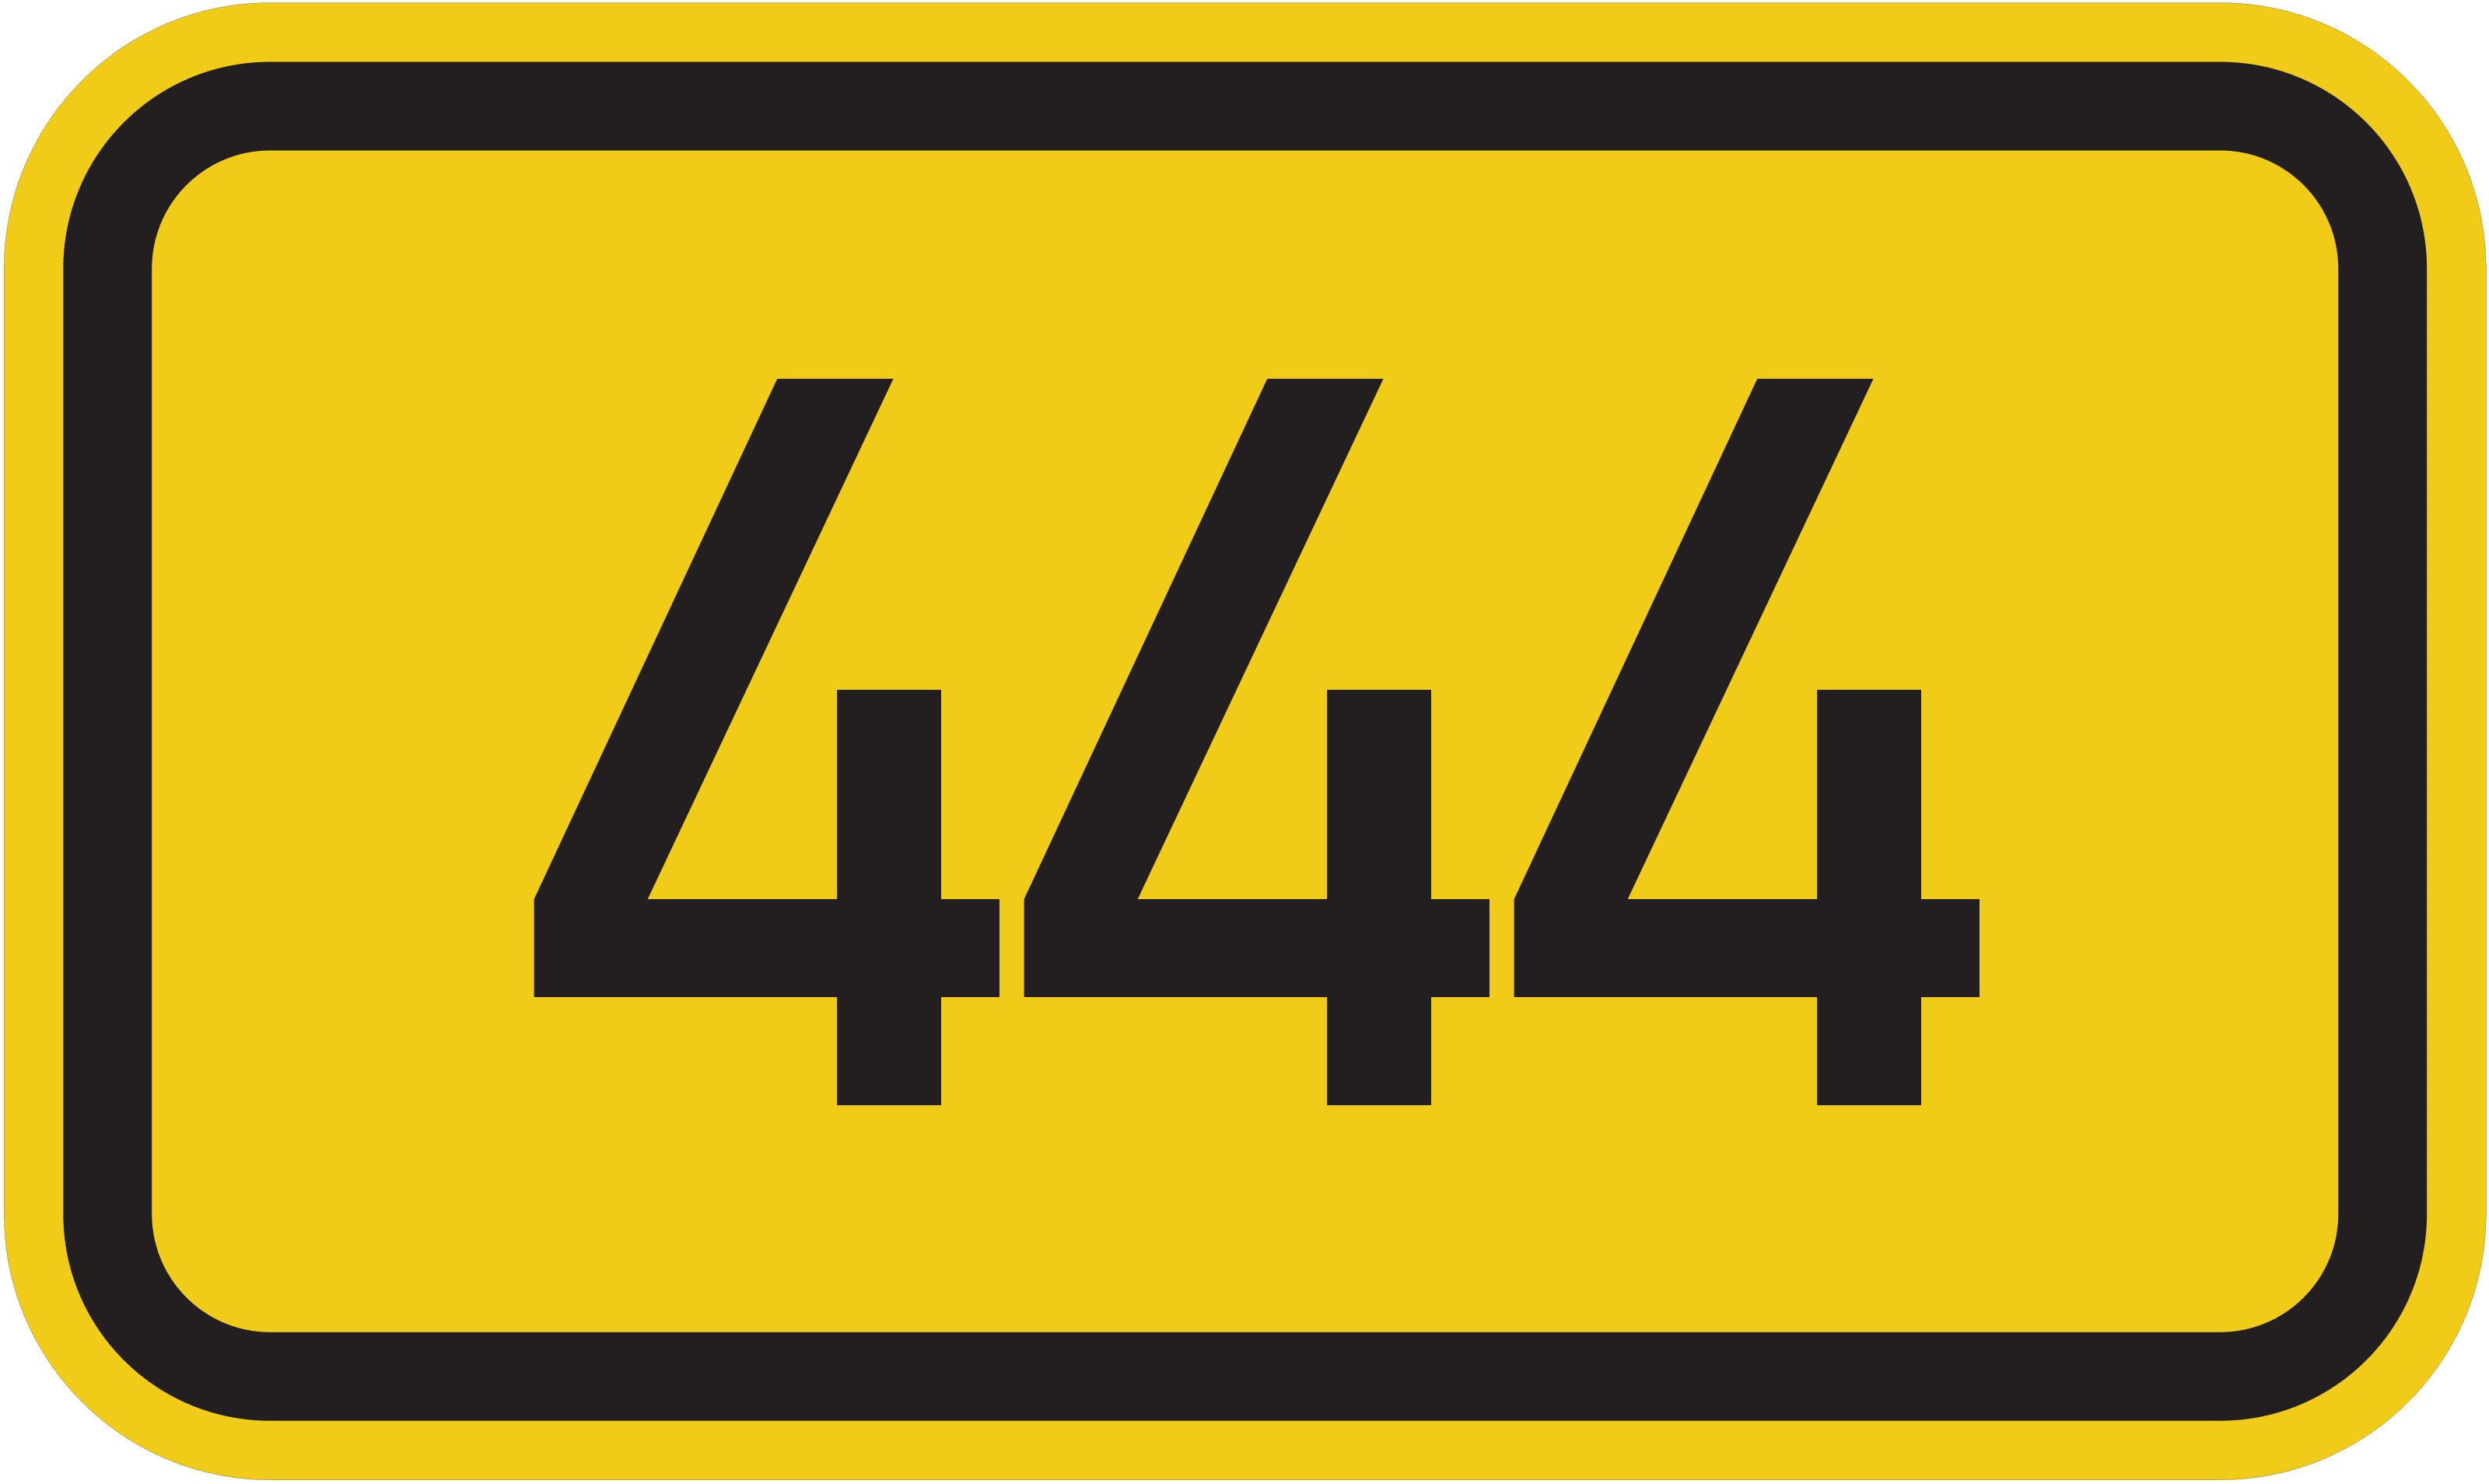 Bundesstraße B 444